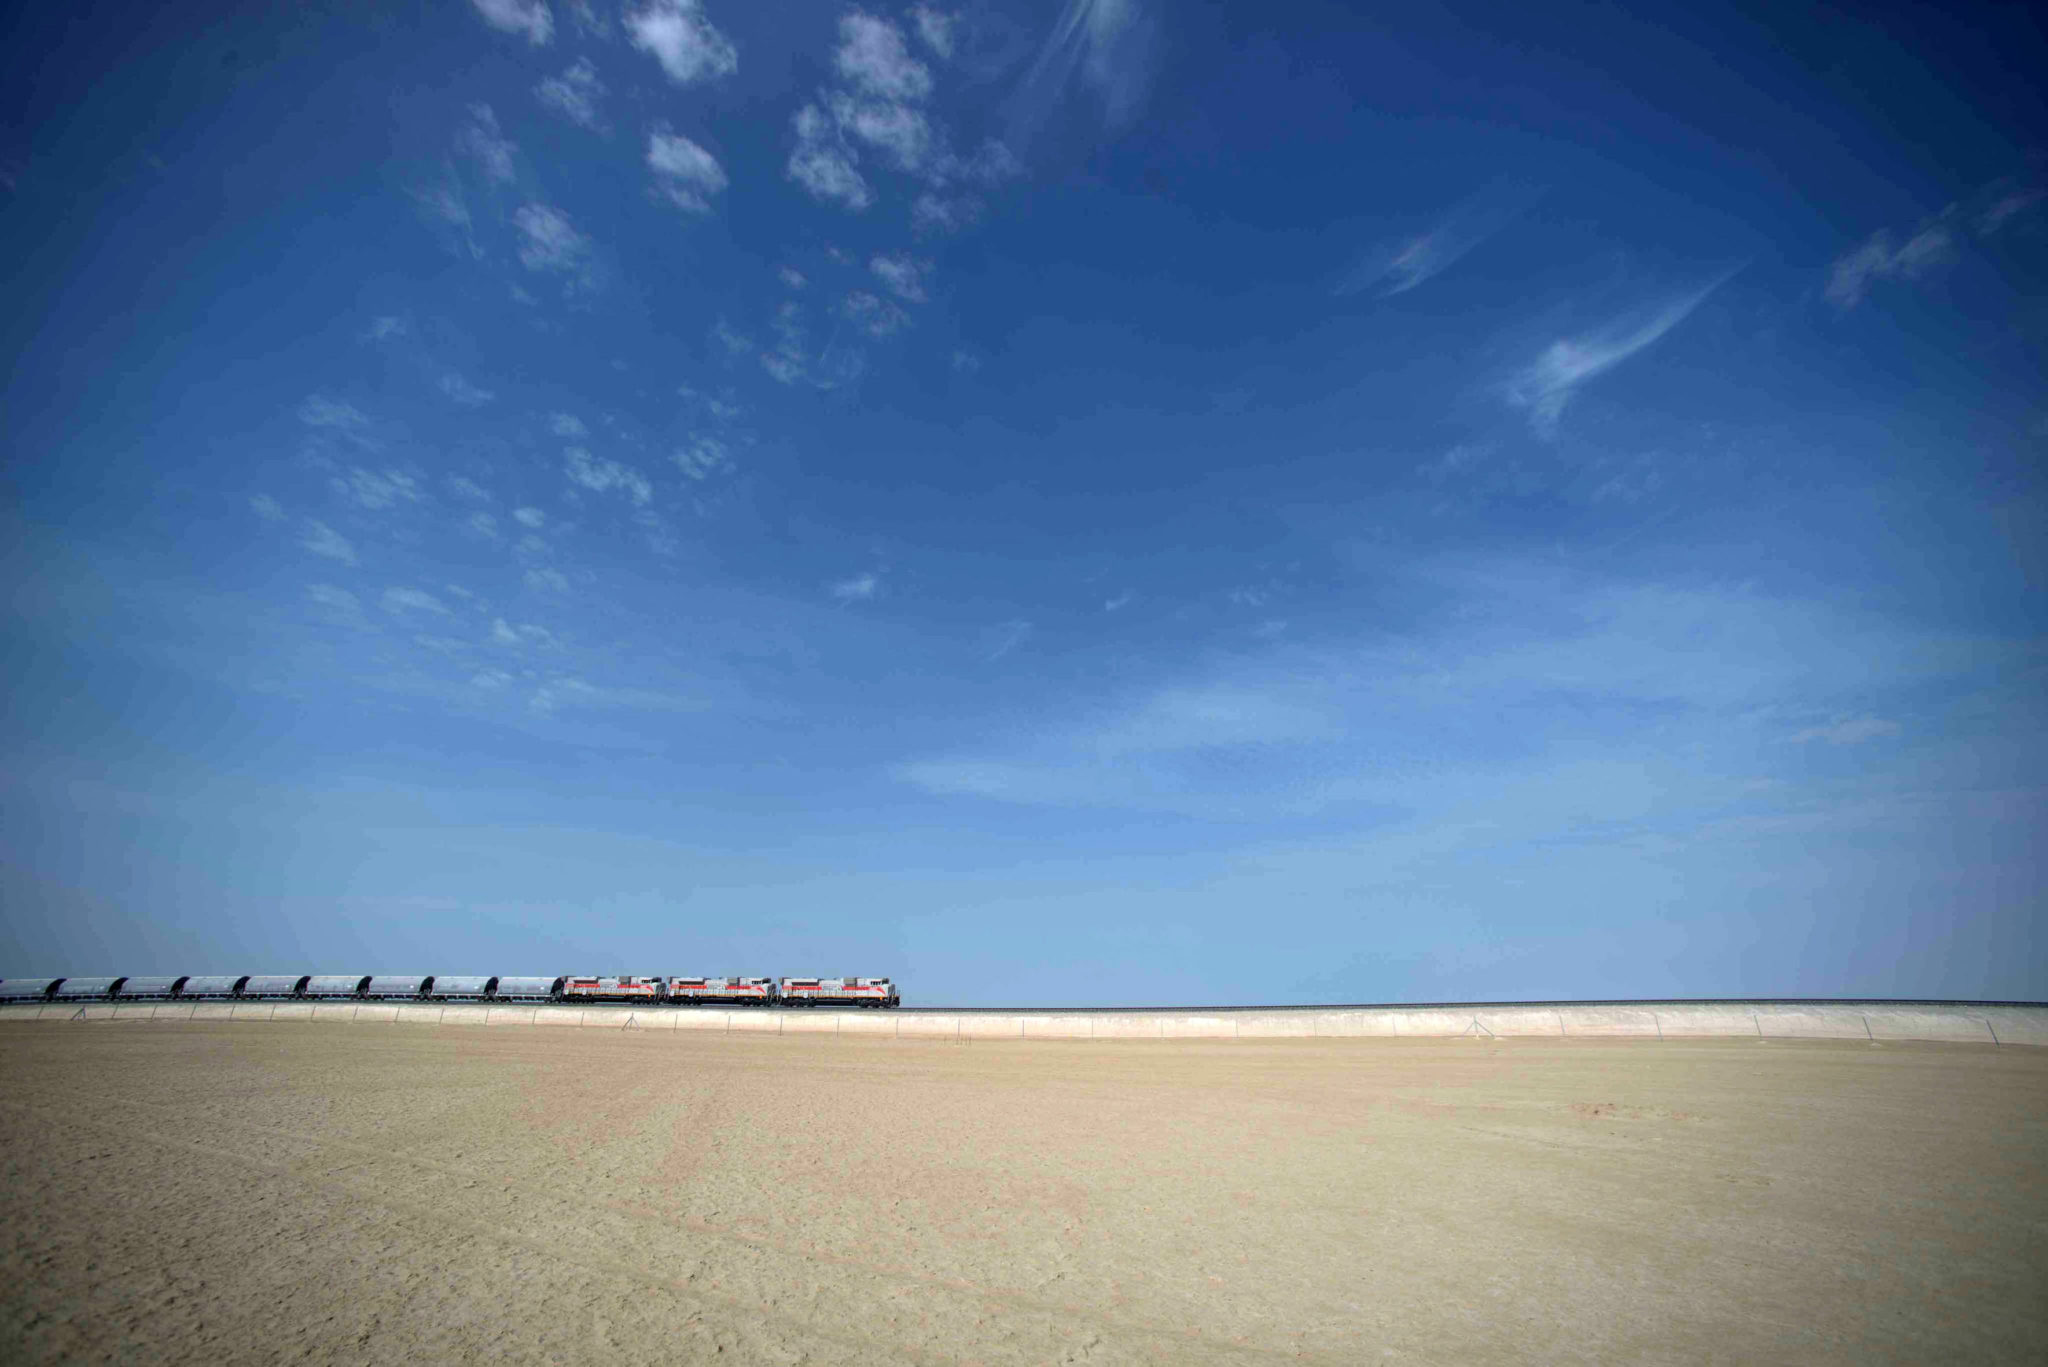 Etihad Rail DB freight train in UAE